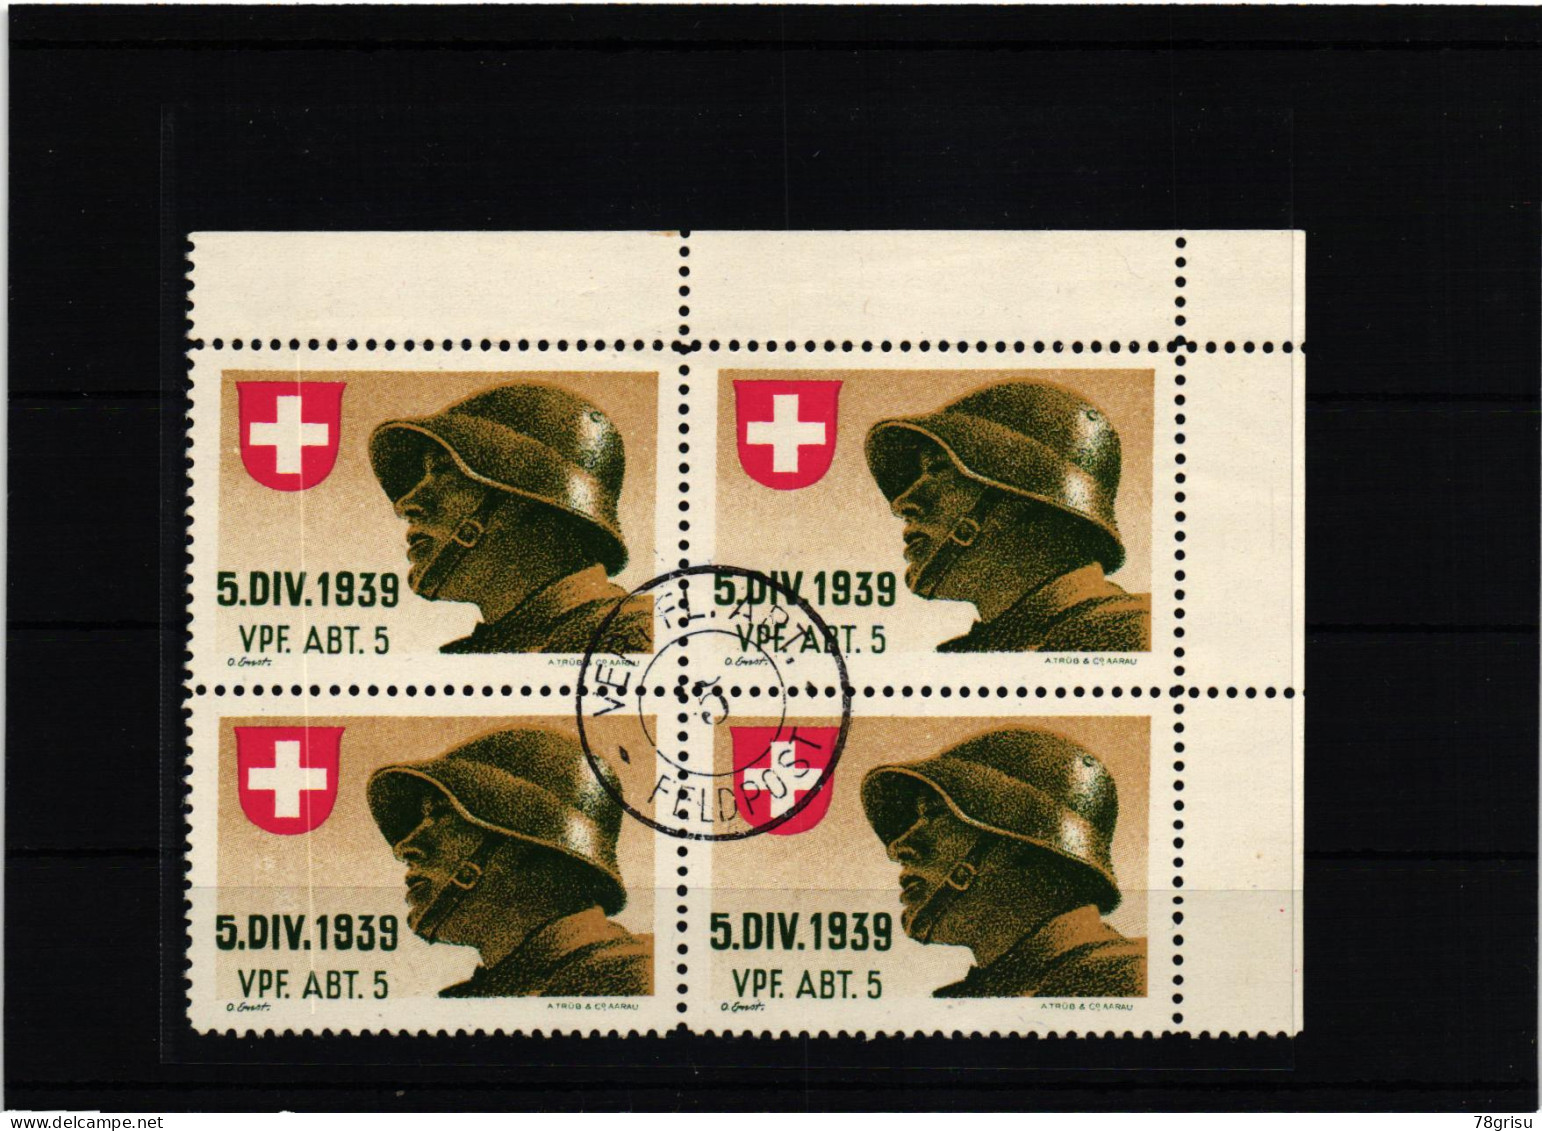 Schweiz Soldatenmarken, Vpf.Abt. Verpflegungs Abteilung 1939 Ges. - Vignettes